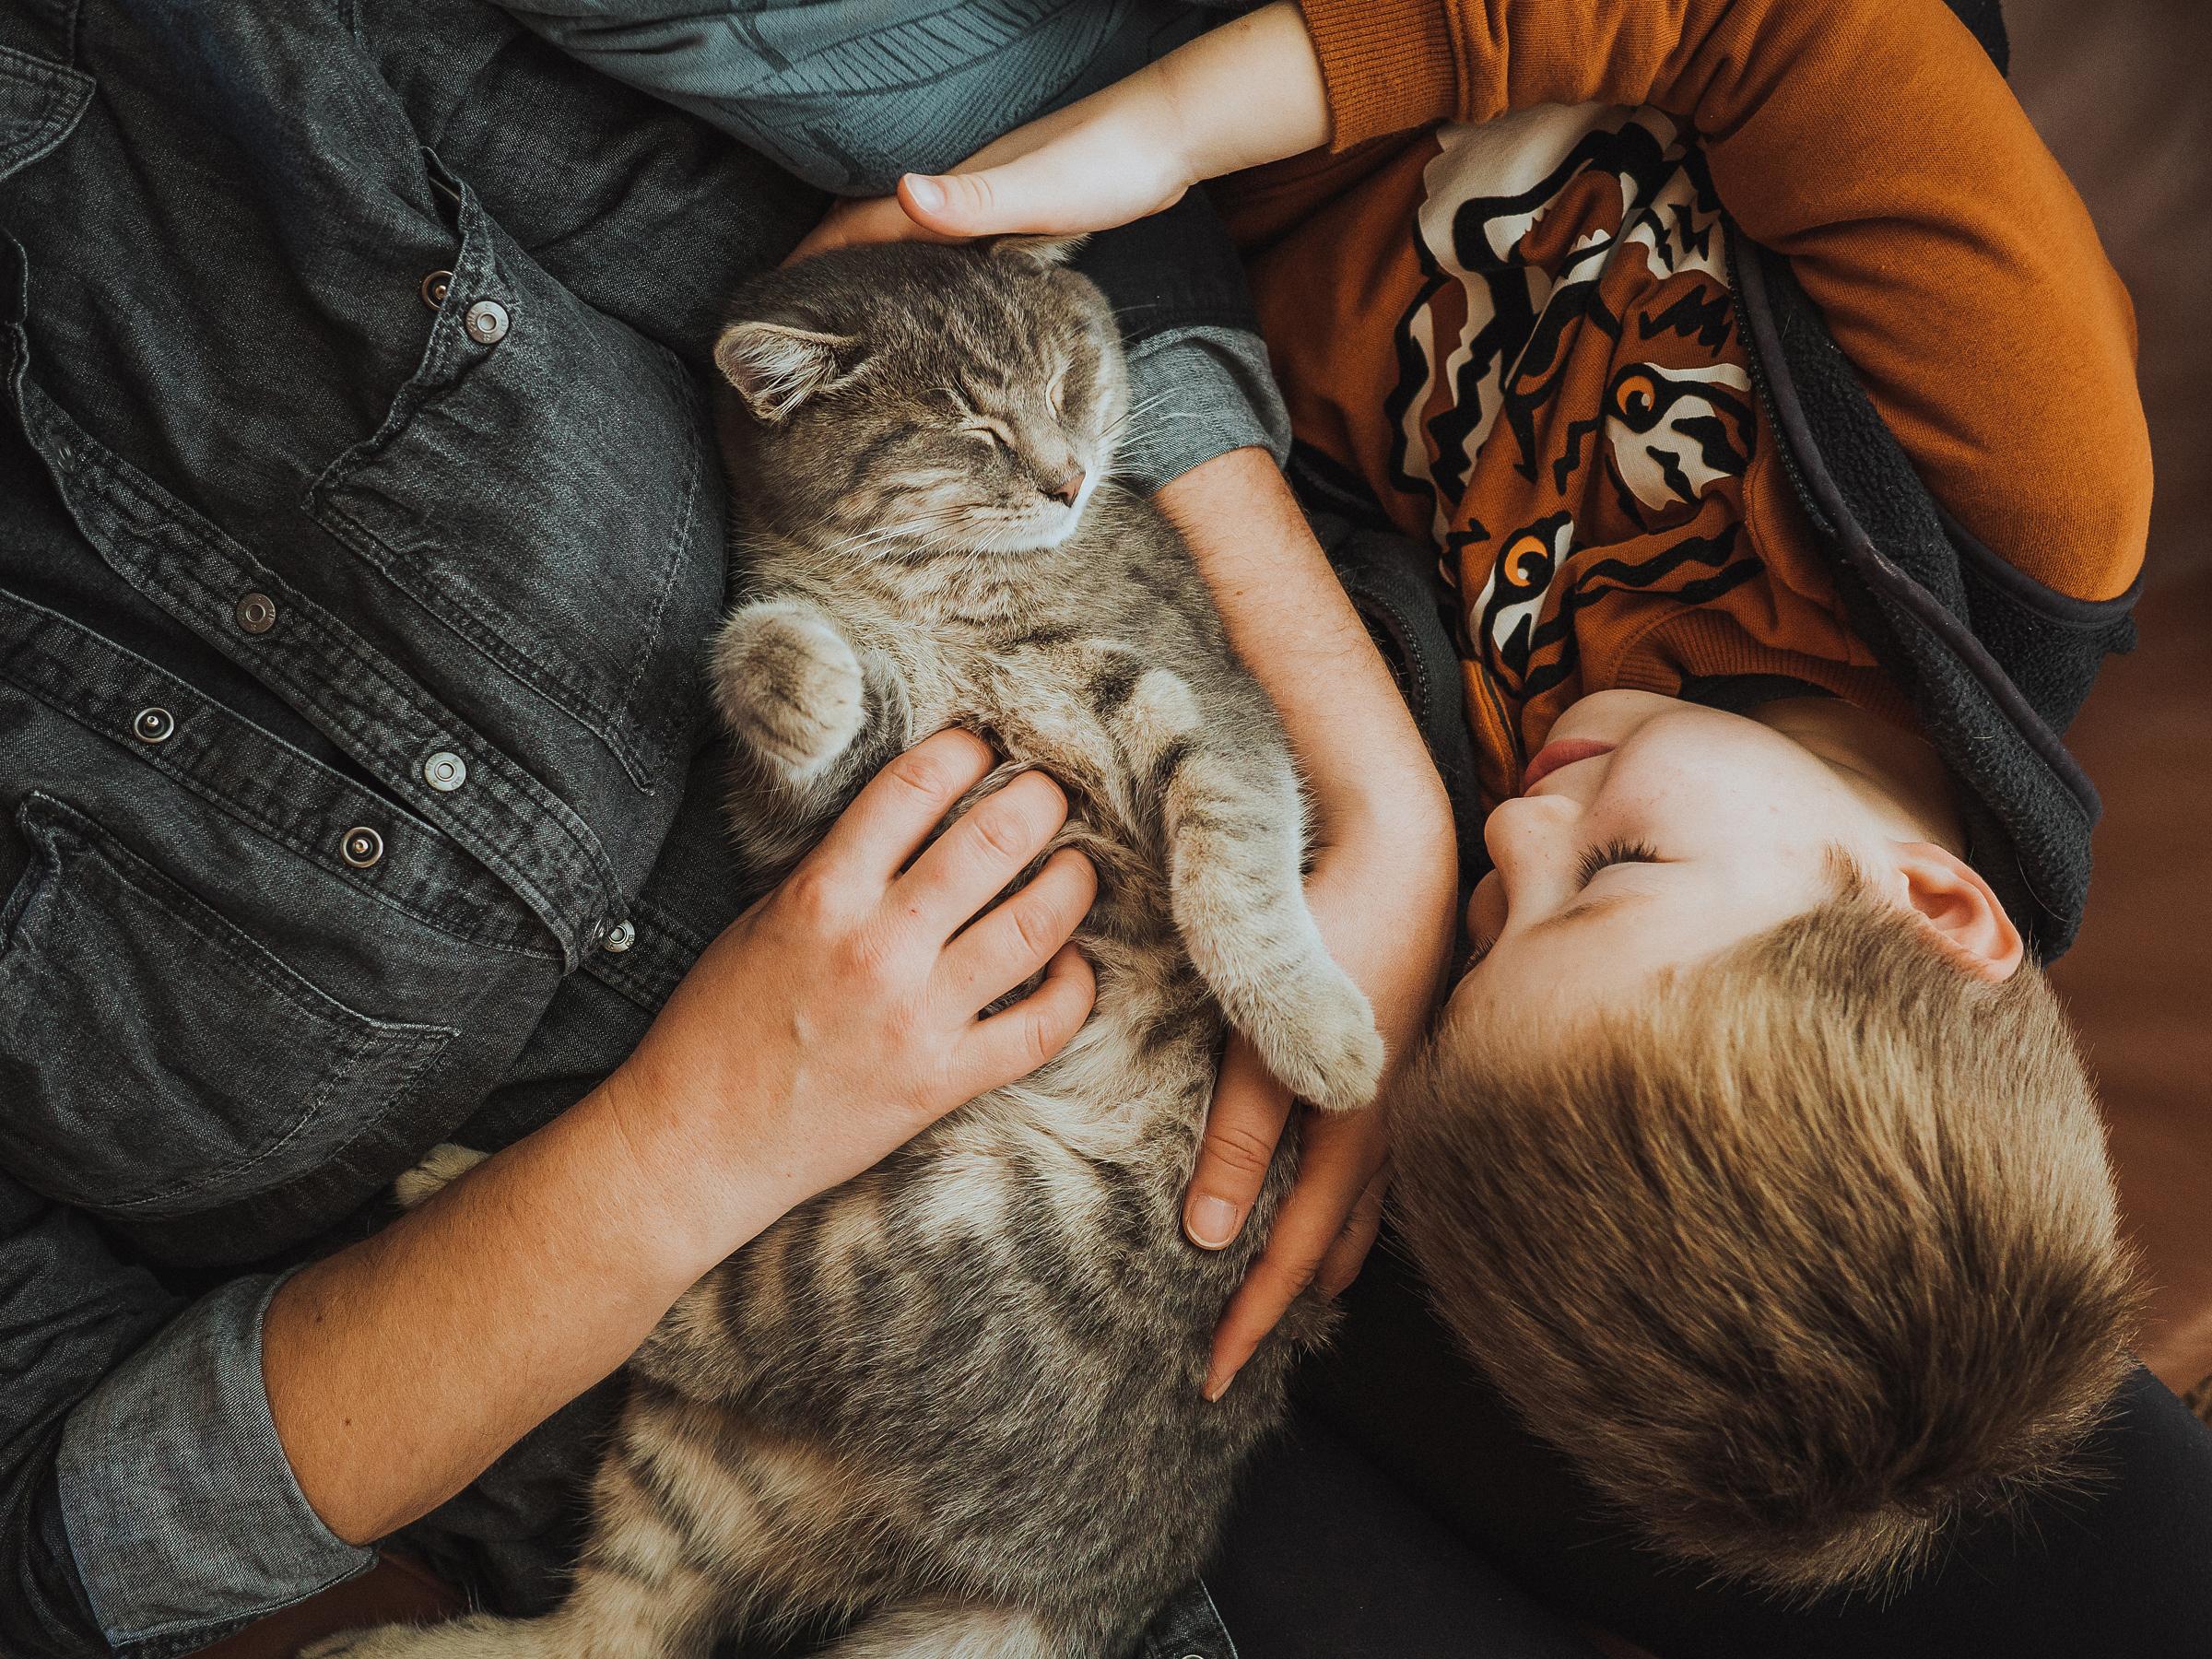 Katteforsikring: Sådan dækker forsikring skader eller sygdom